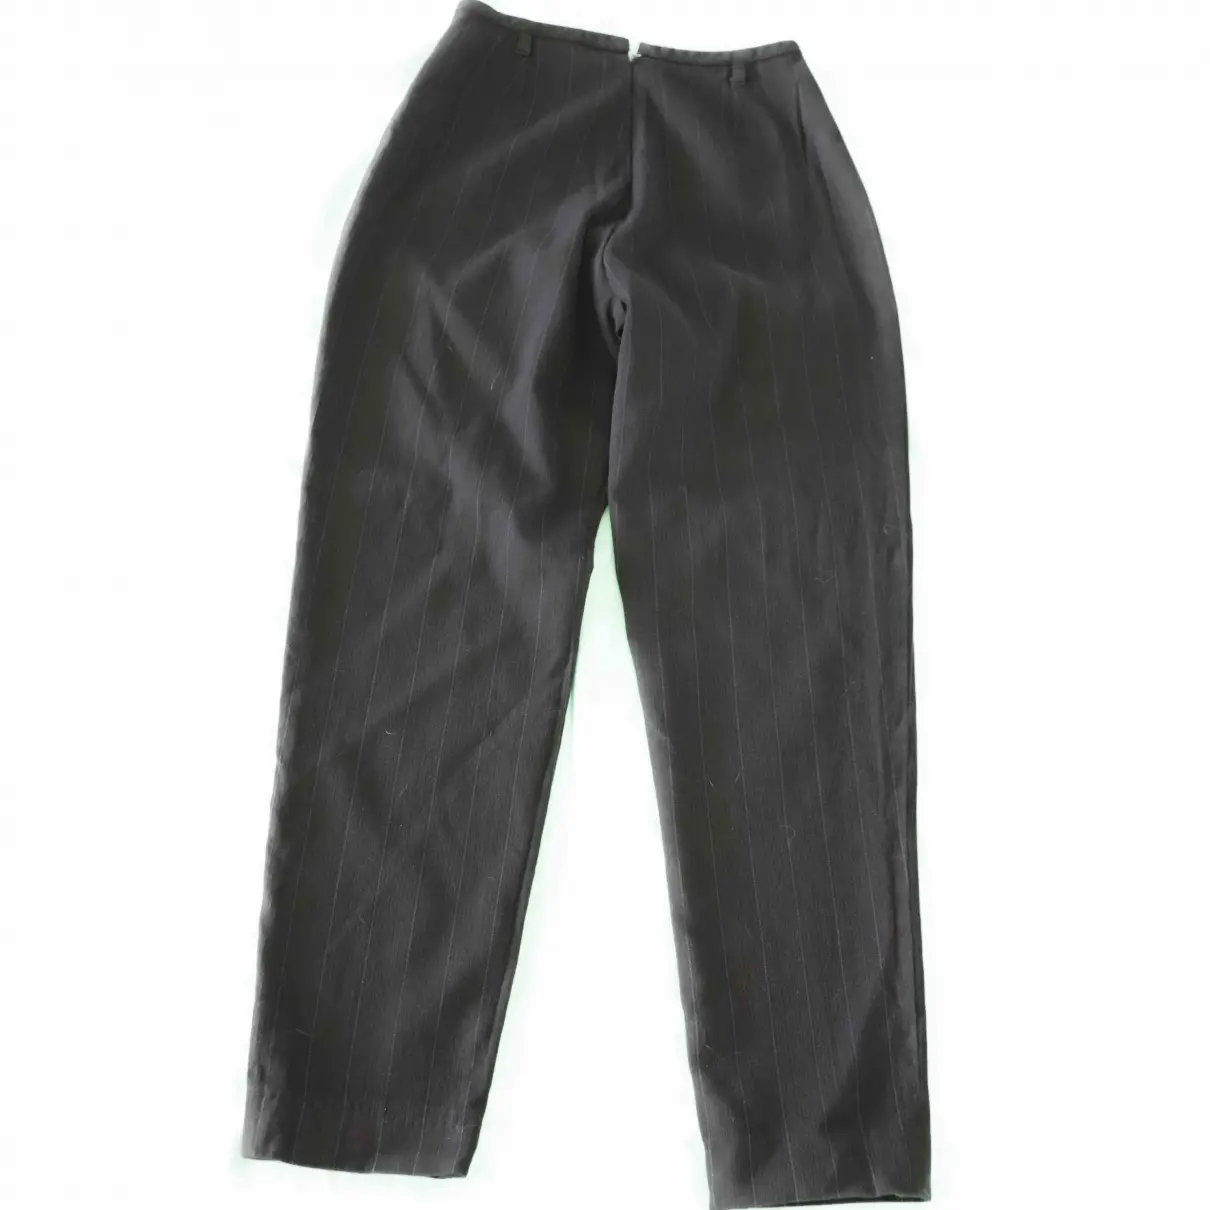 Buy Jean Paul Gaultier Trousers online